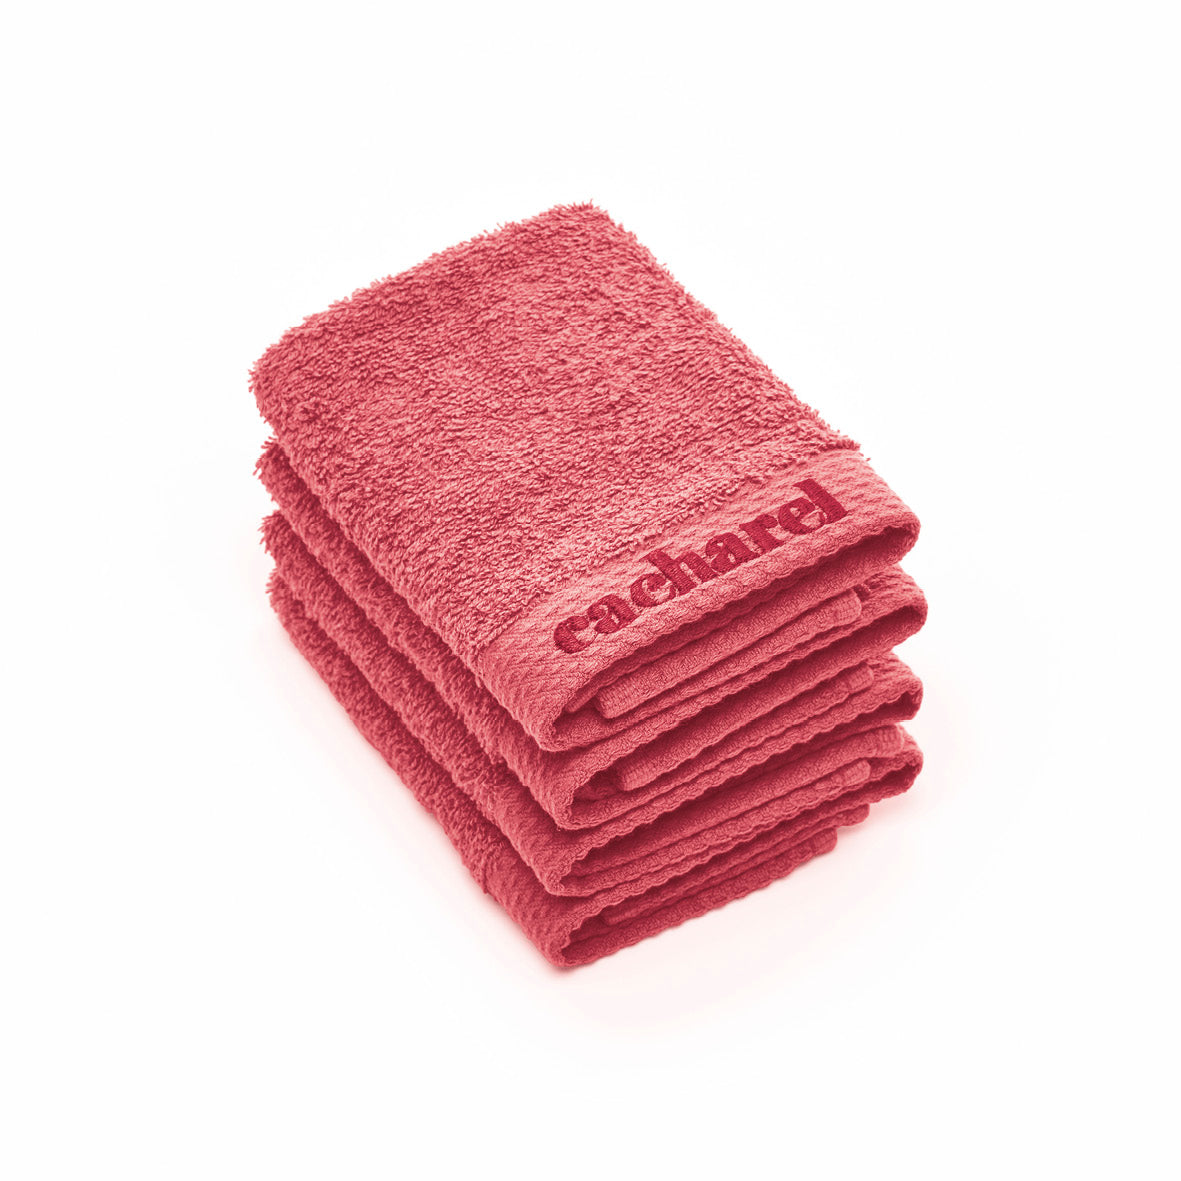 4 guest towels - 30 x 30 cm